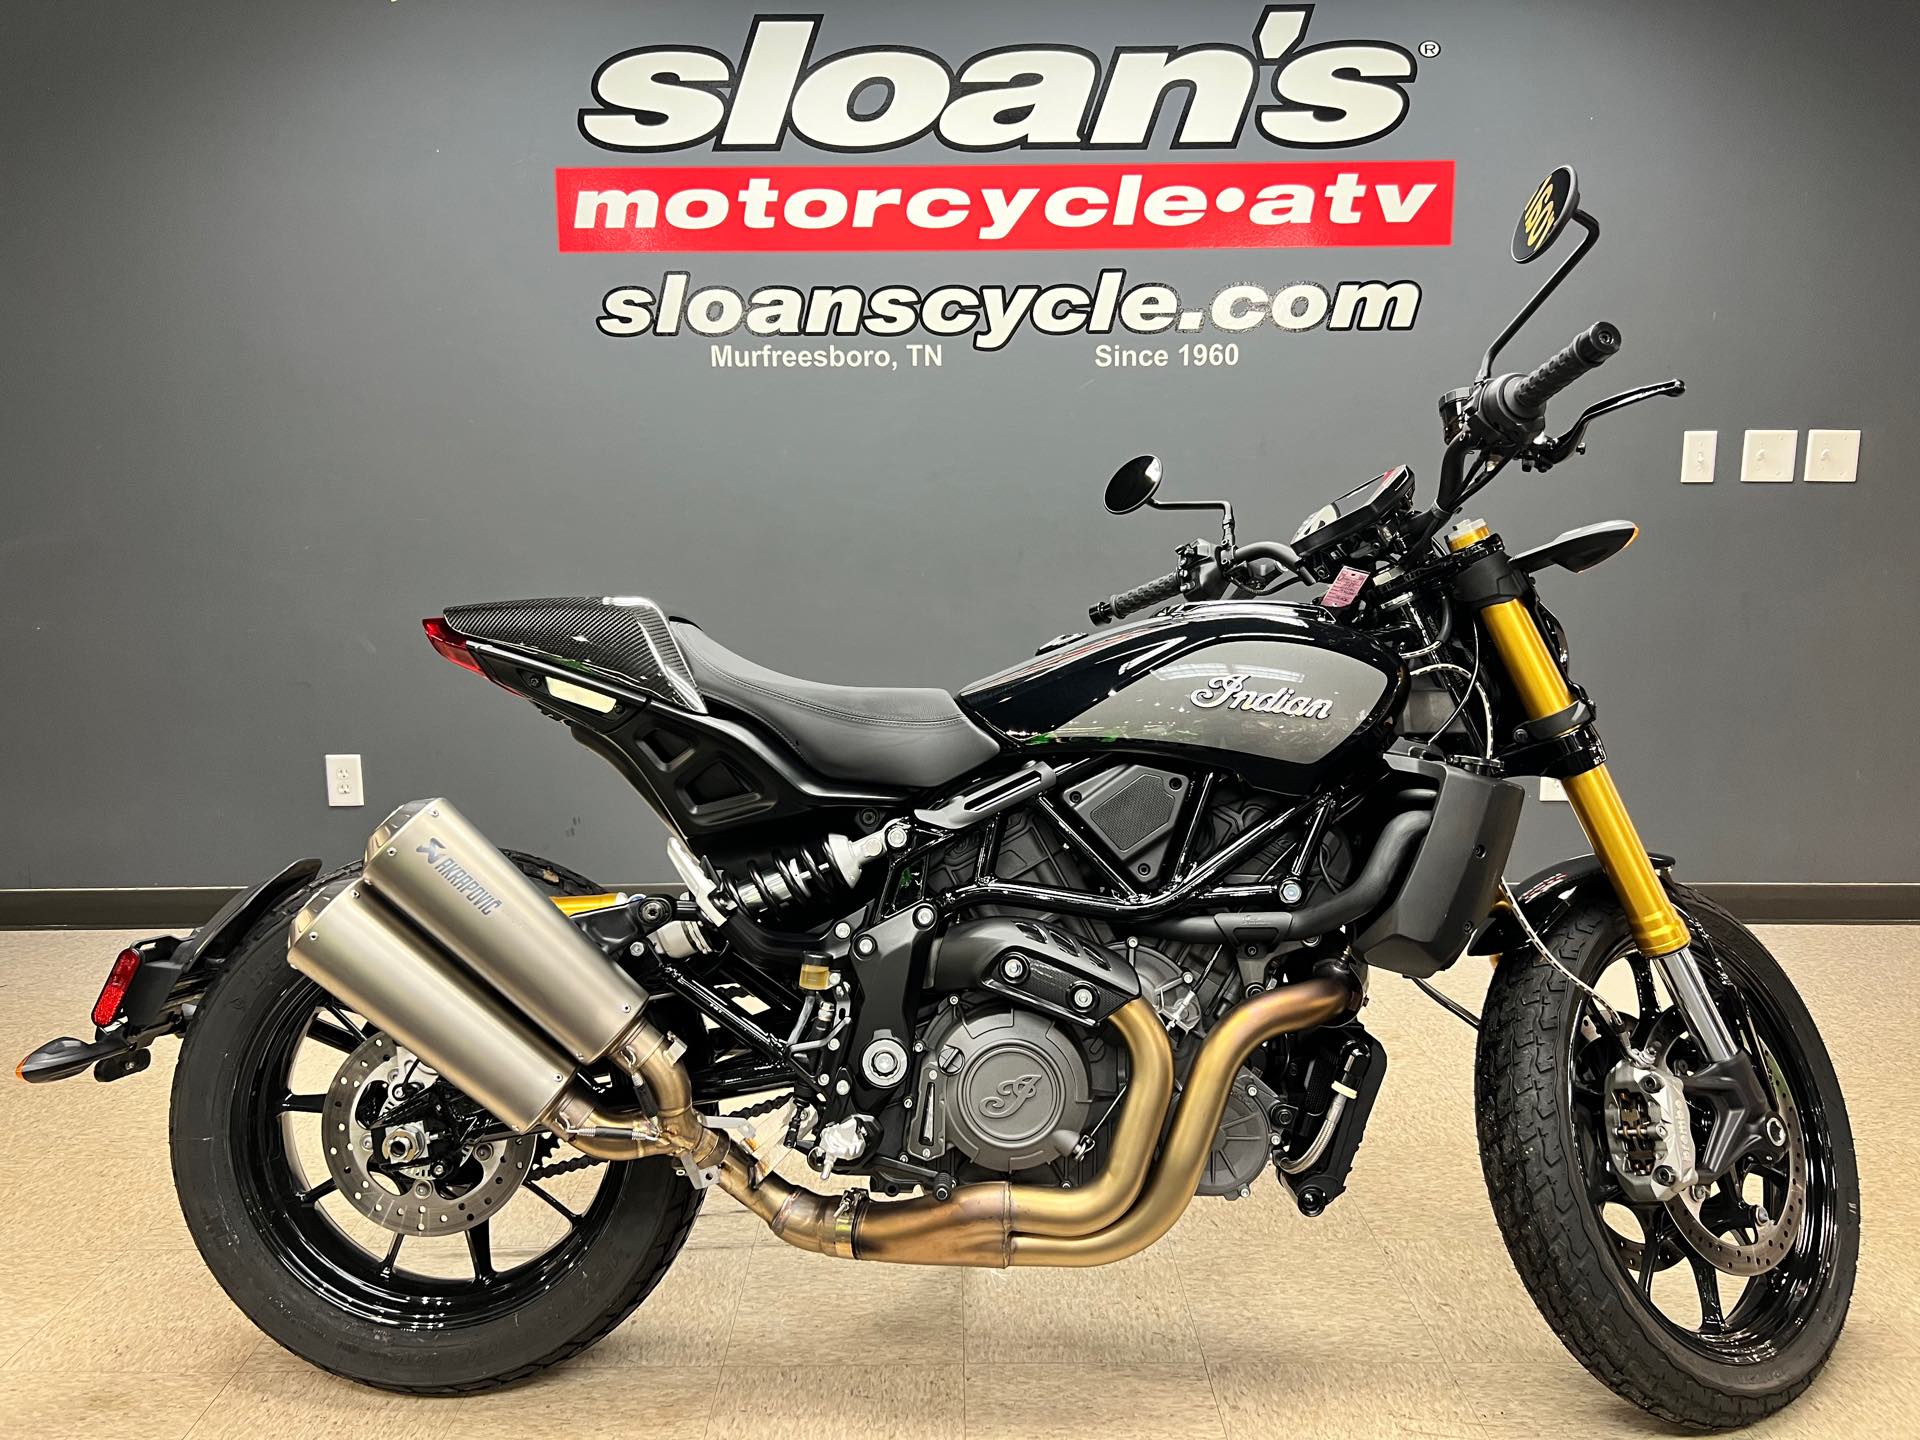 2019 Indian FTR 1200 S at Sloans Motorcycle ATV, Murfreesboro, TN, 37129